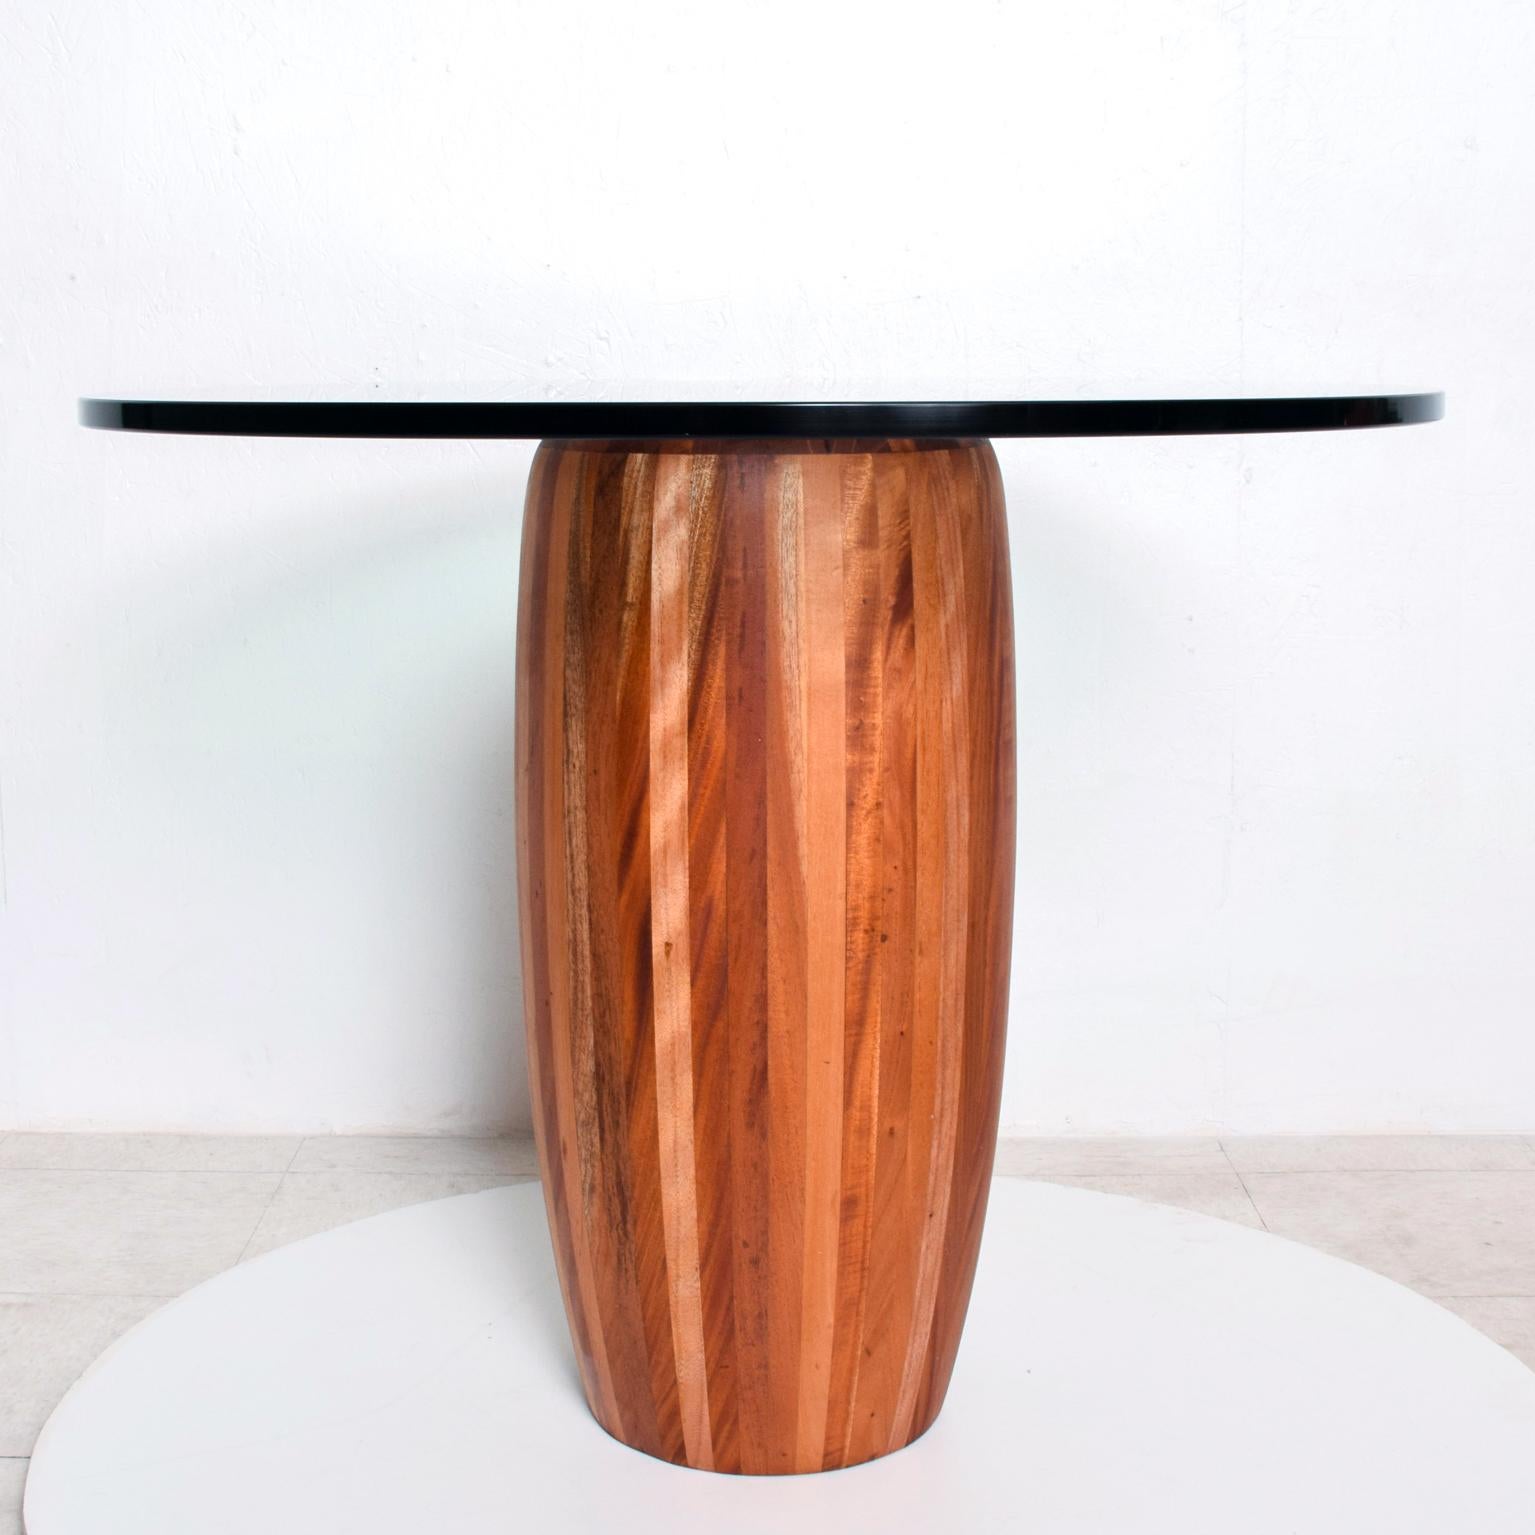 Table centrale
Table centrale ronde à piédestal en bois de cèdre massif du Mexique 1980 Moderne
Socle en bois de cèdre massif. Le plateau en verre a une épaisseur d'environ 0,75 mm et ses bords sont polis.
Non marqué, aucune information du fabricant